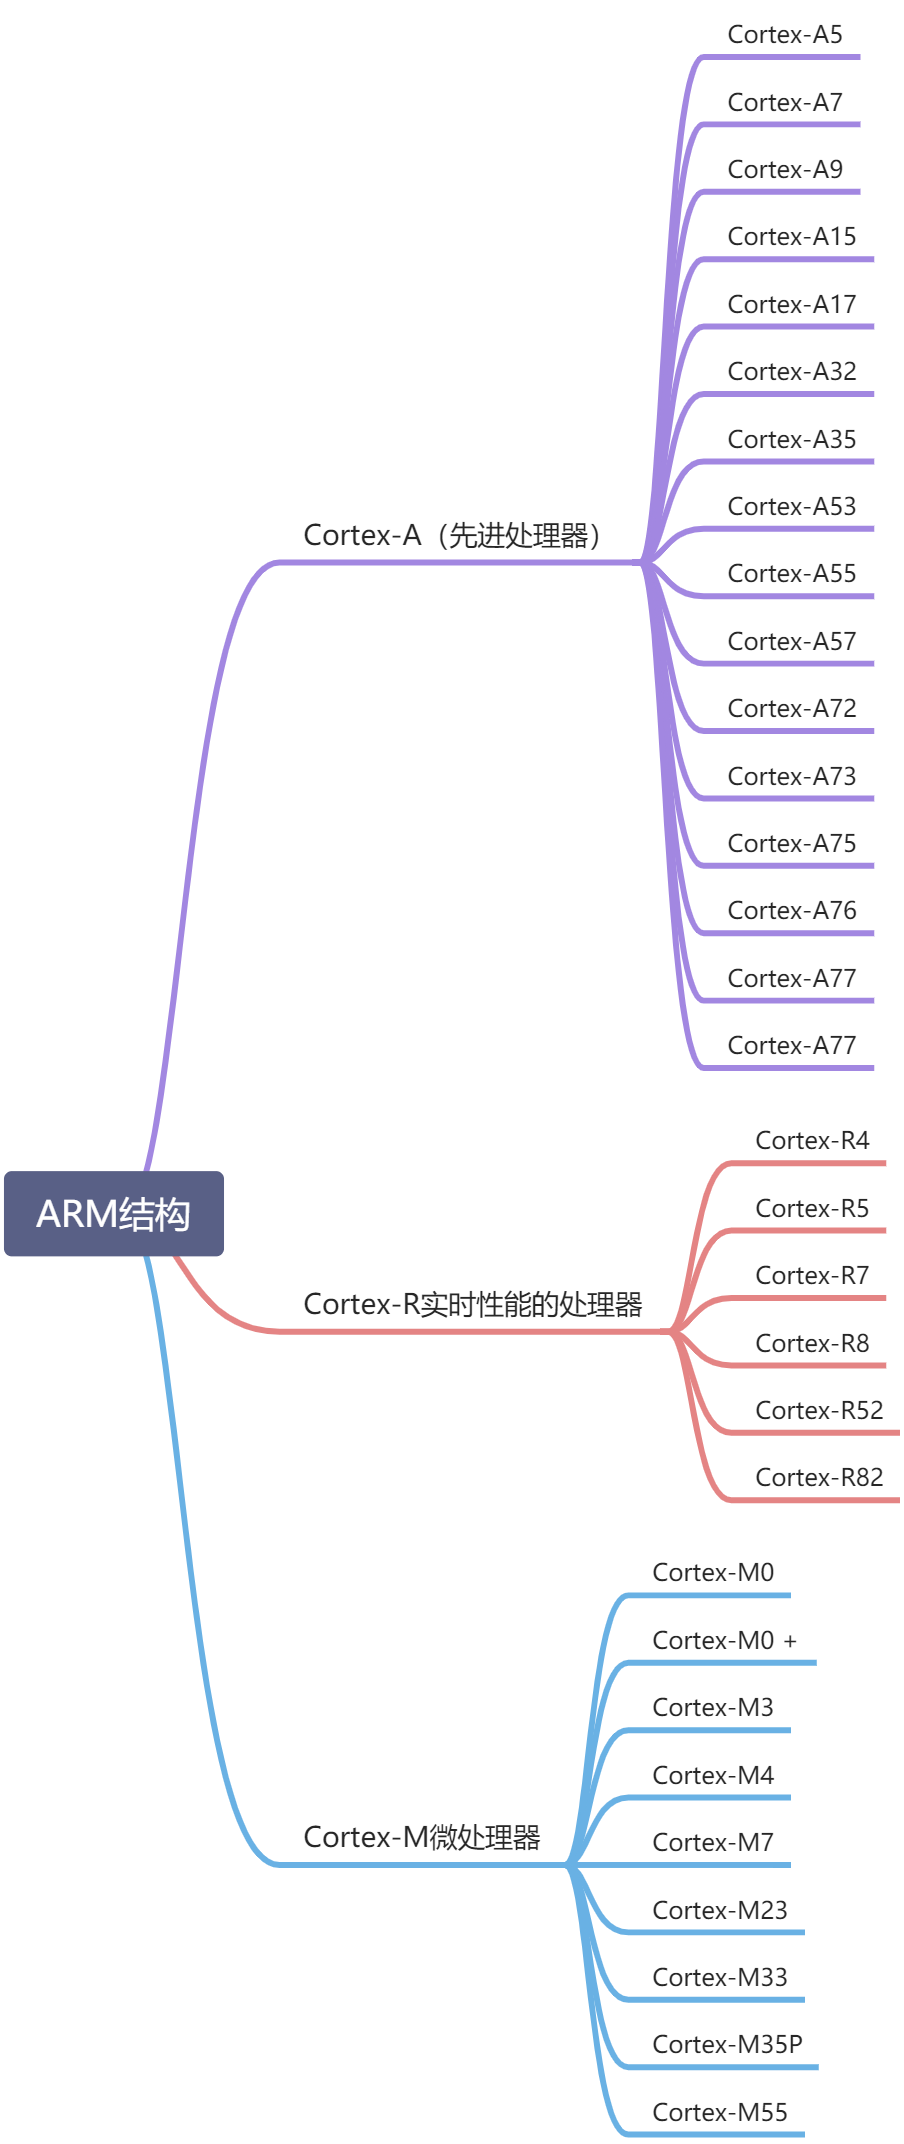 ARM架构的分类 - 图1